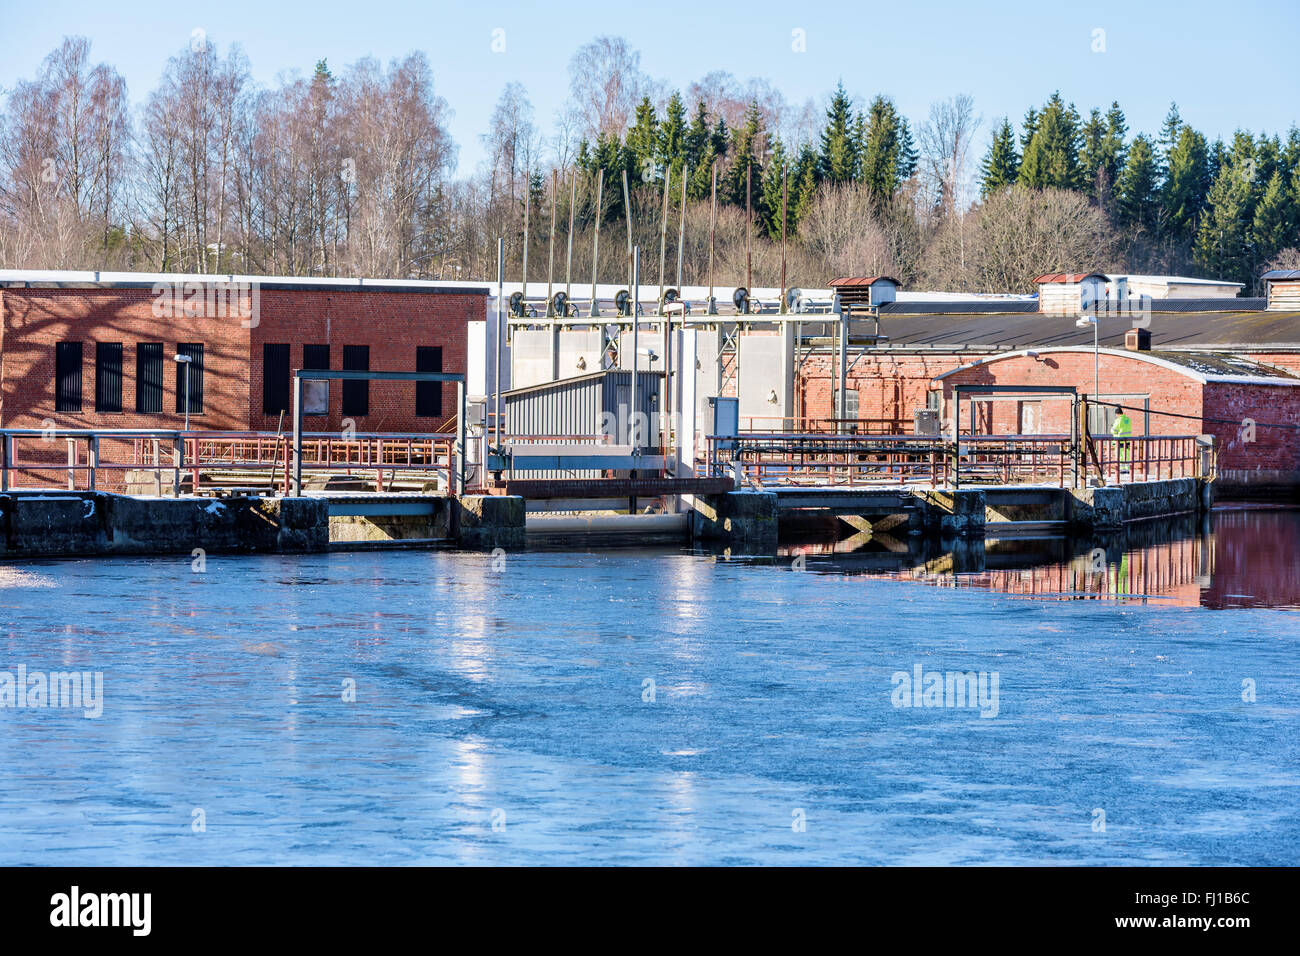 Fridafors, Schweden - 16. Februar 2016: Unbekannte Person, die einen Sicherheits-Check auf einer verlassenen Papierfabrik an der Brücke eines Dammes. Stockfoto